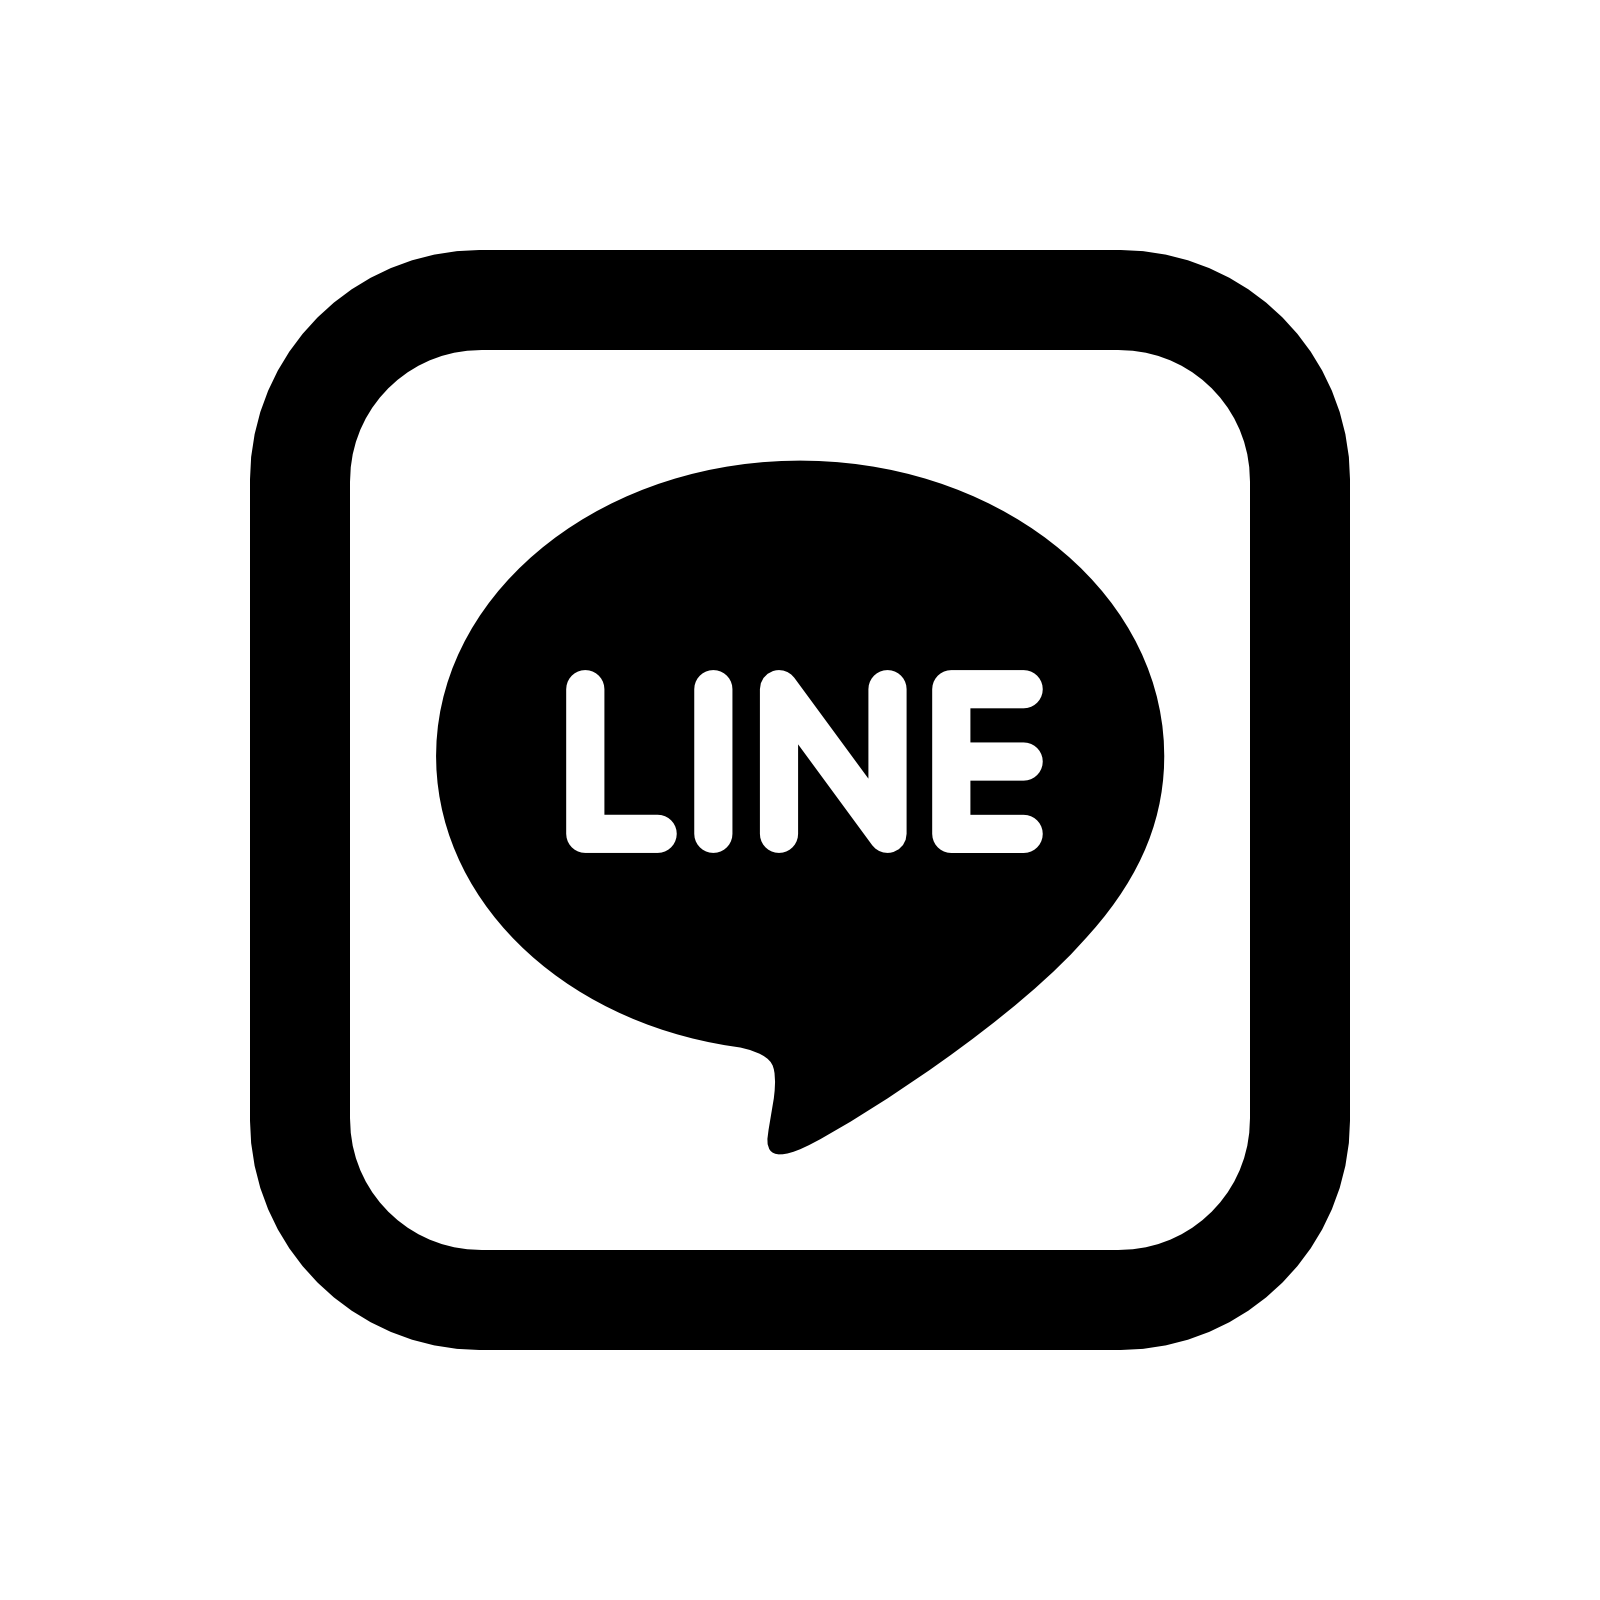 Line Logo - Line Logo Png Images